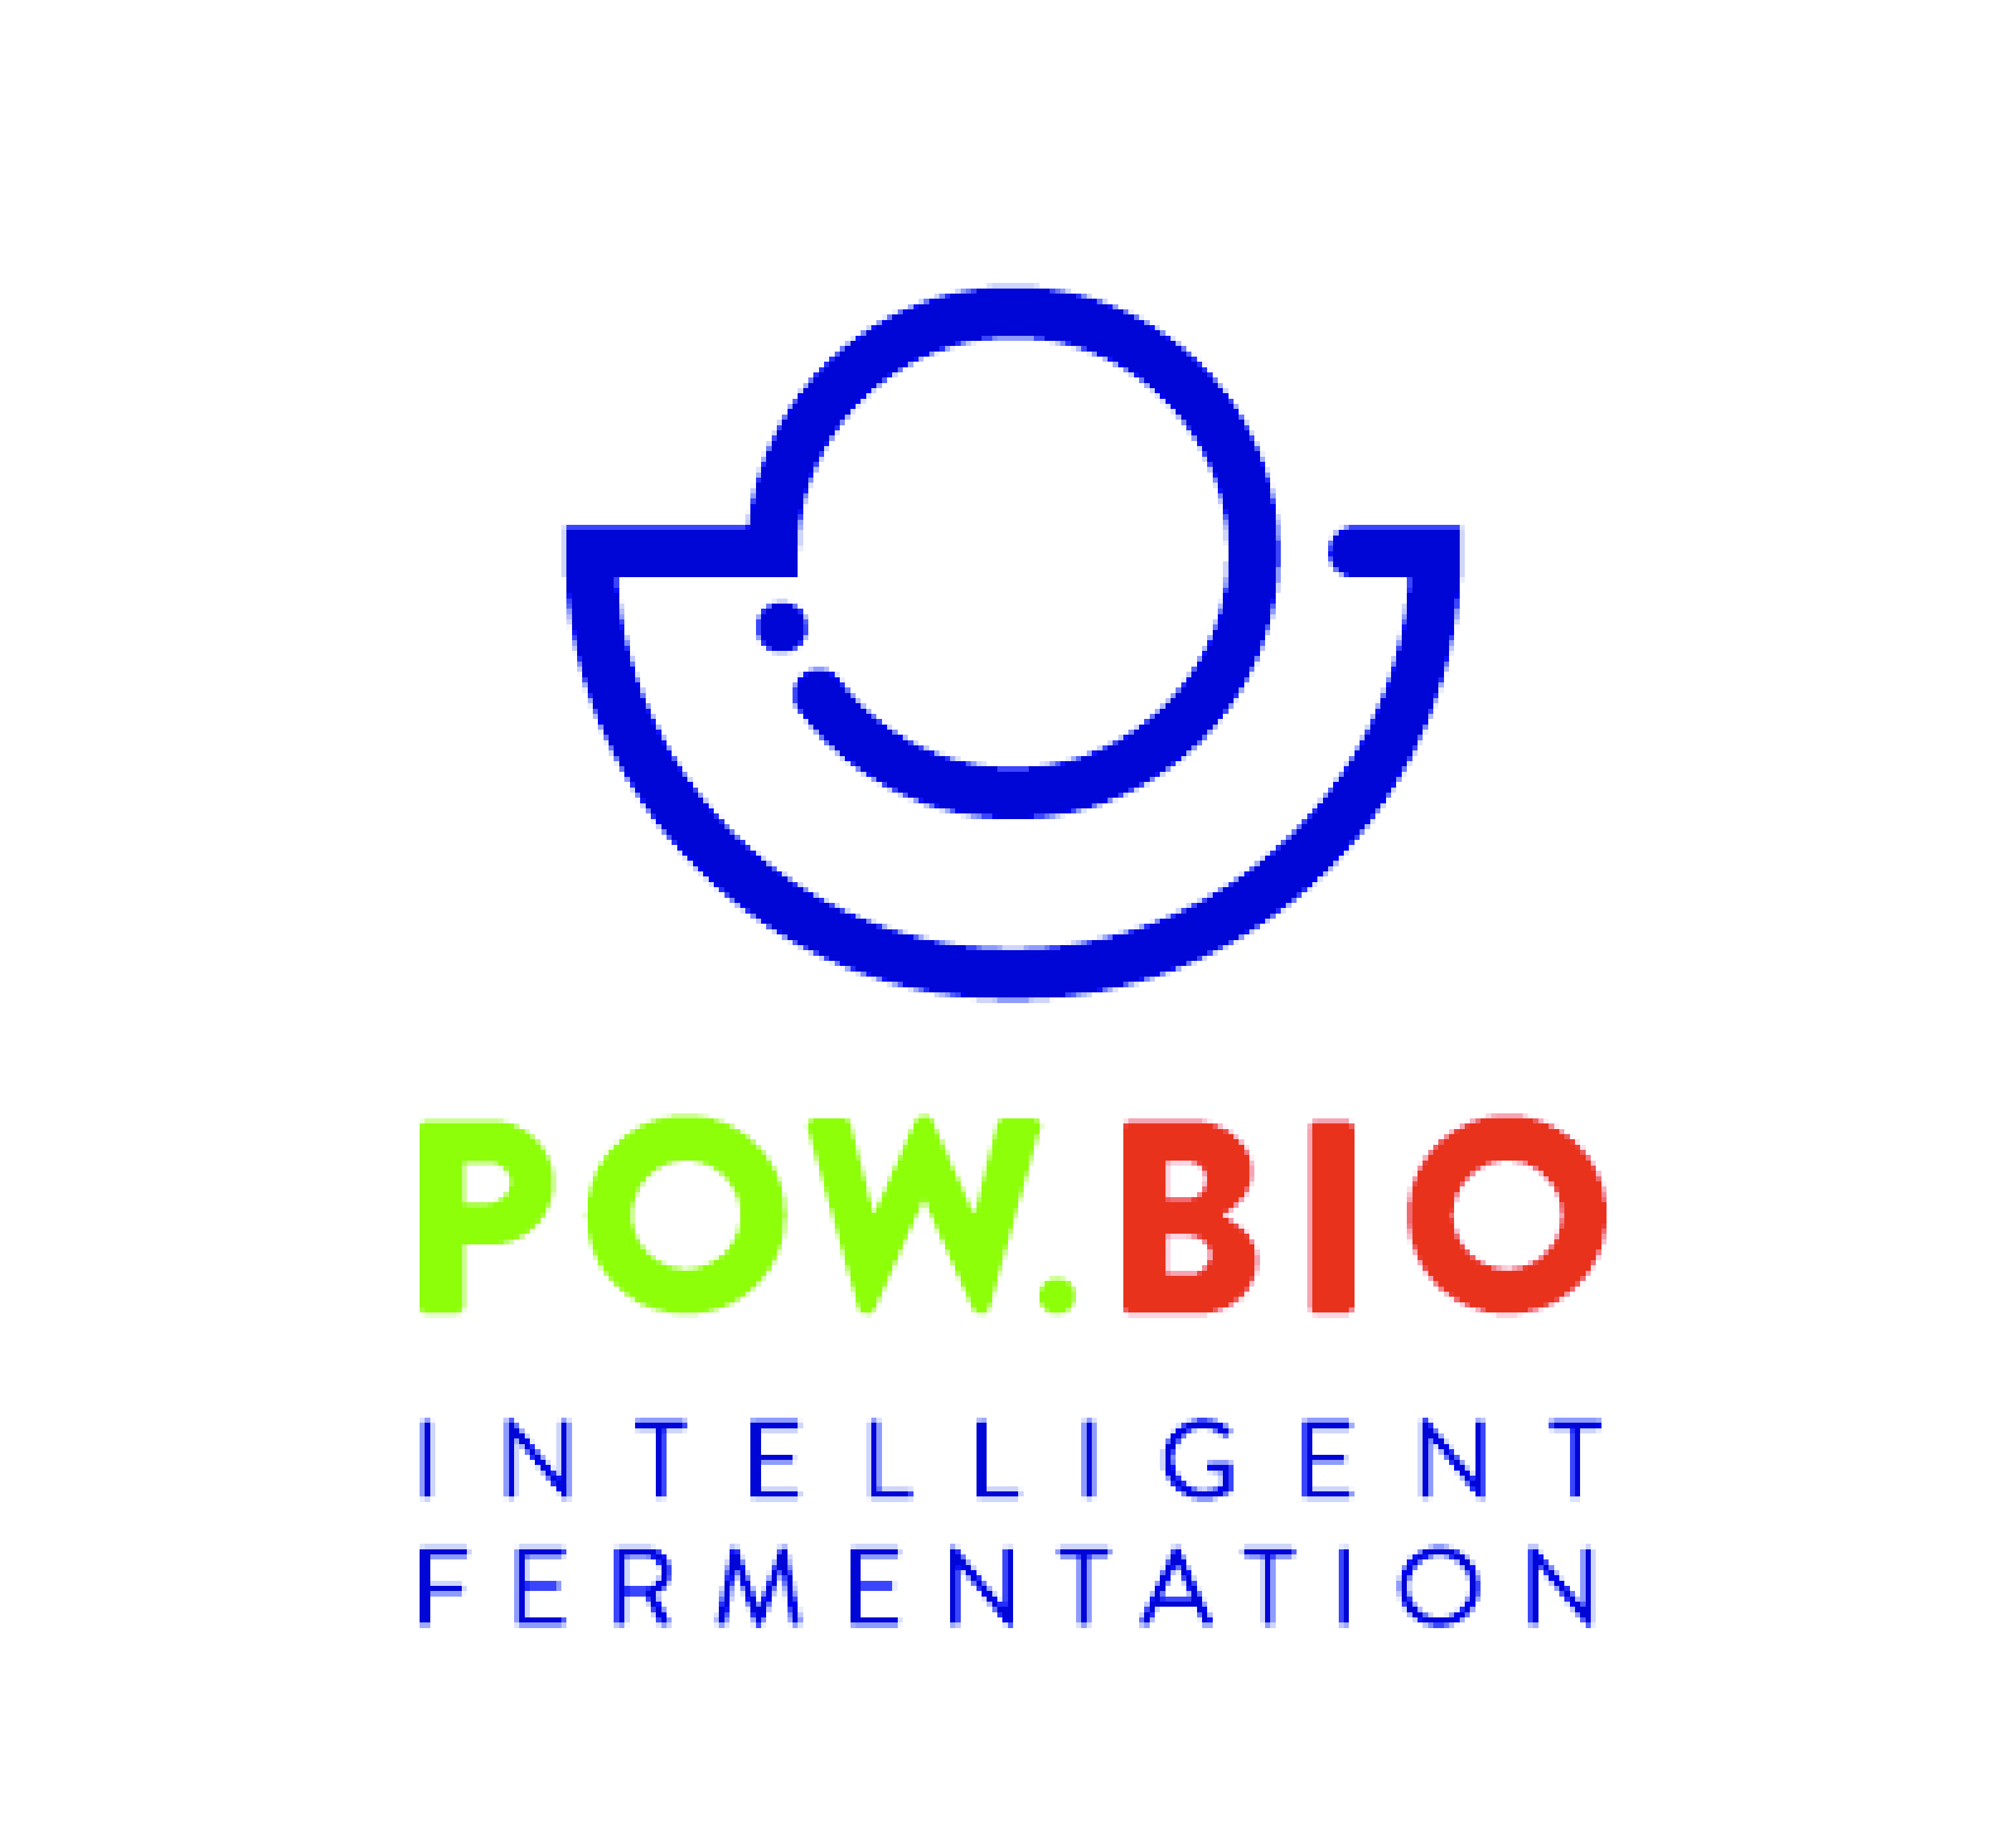 Pow.bio_logo.eps